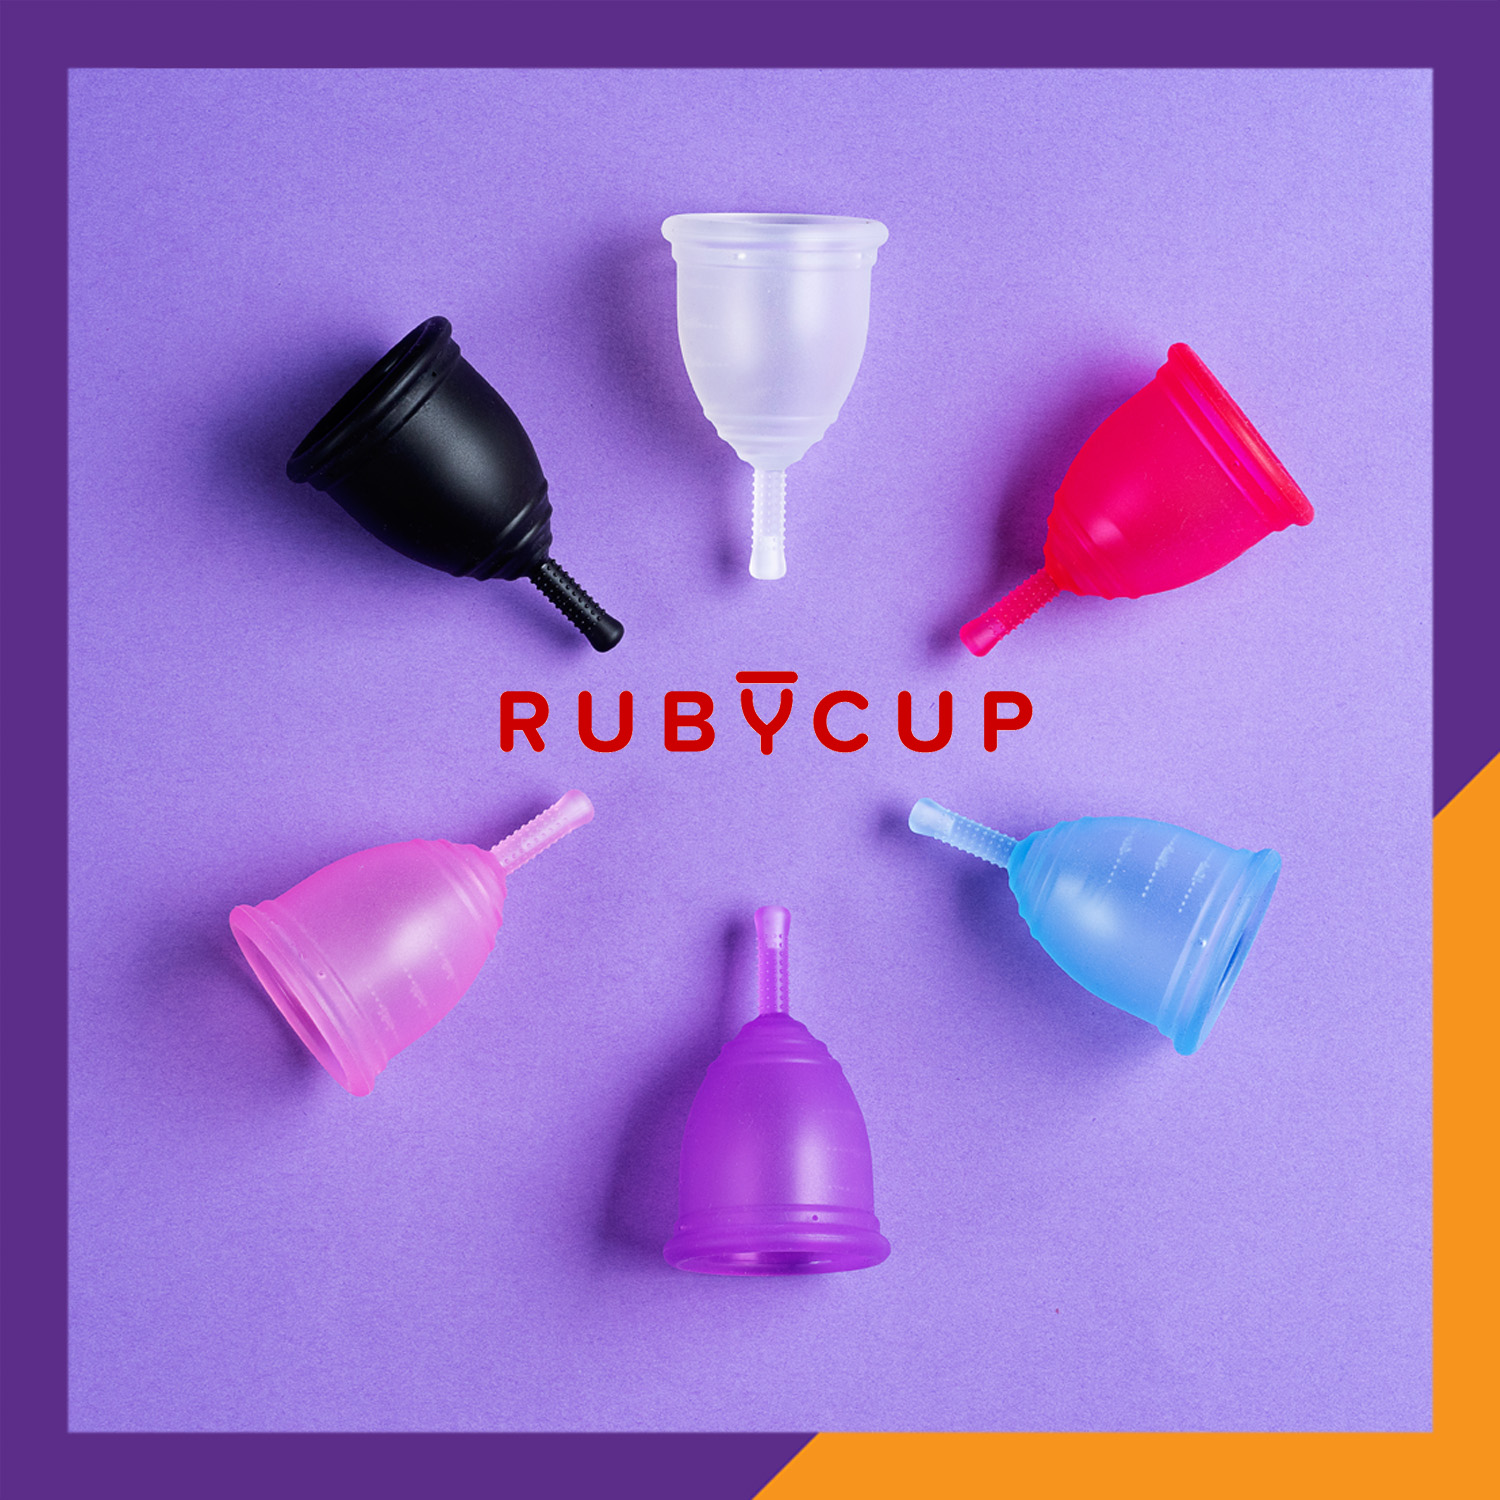 Cốc Nguyệt San Ruby Cup Anh Trong Suốt Size S 24ml - Độ Mềm Phù Hợp Phụ Nữ Việt - Vật liệu 100% Sillicon Y Tế Đạt Tiêu Chuẩn FDA – Hàng Chính Hãng Thương Hiệu Được Yêu Thích Tại Anh Và Hơn 36 Quốc Gia - Ruby Cup Clear S